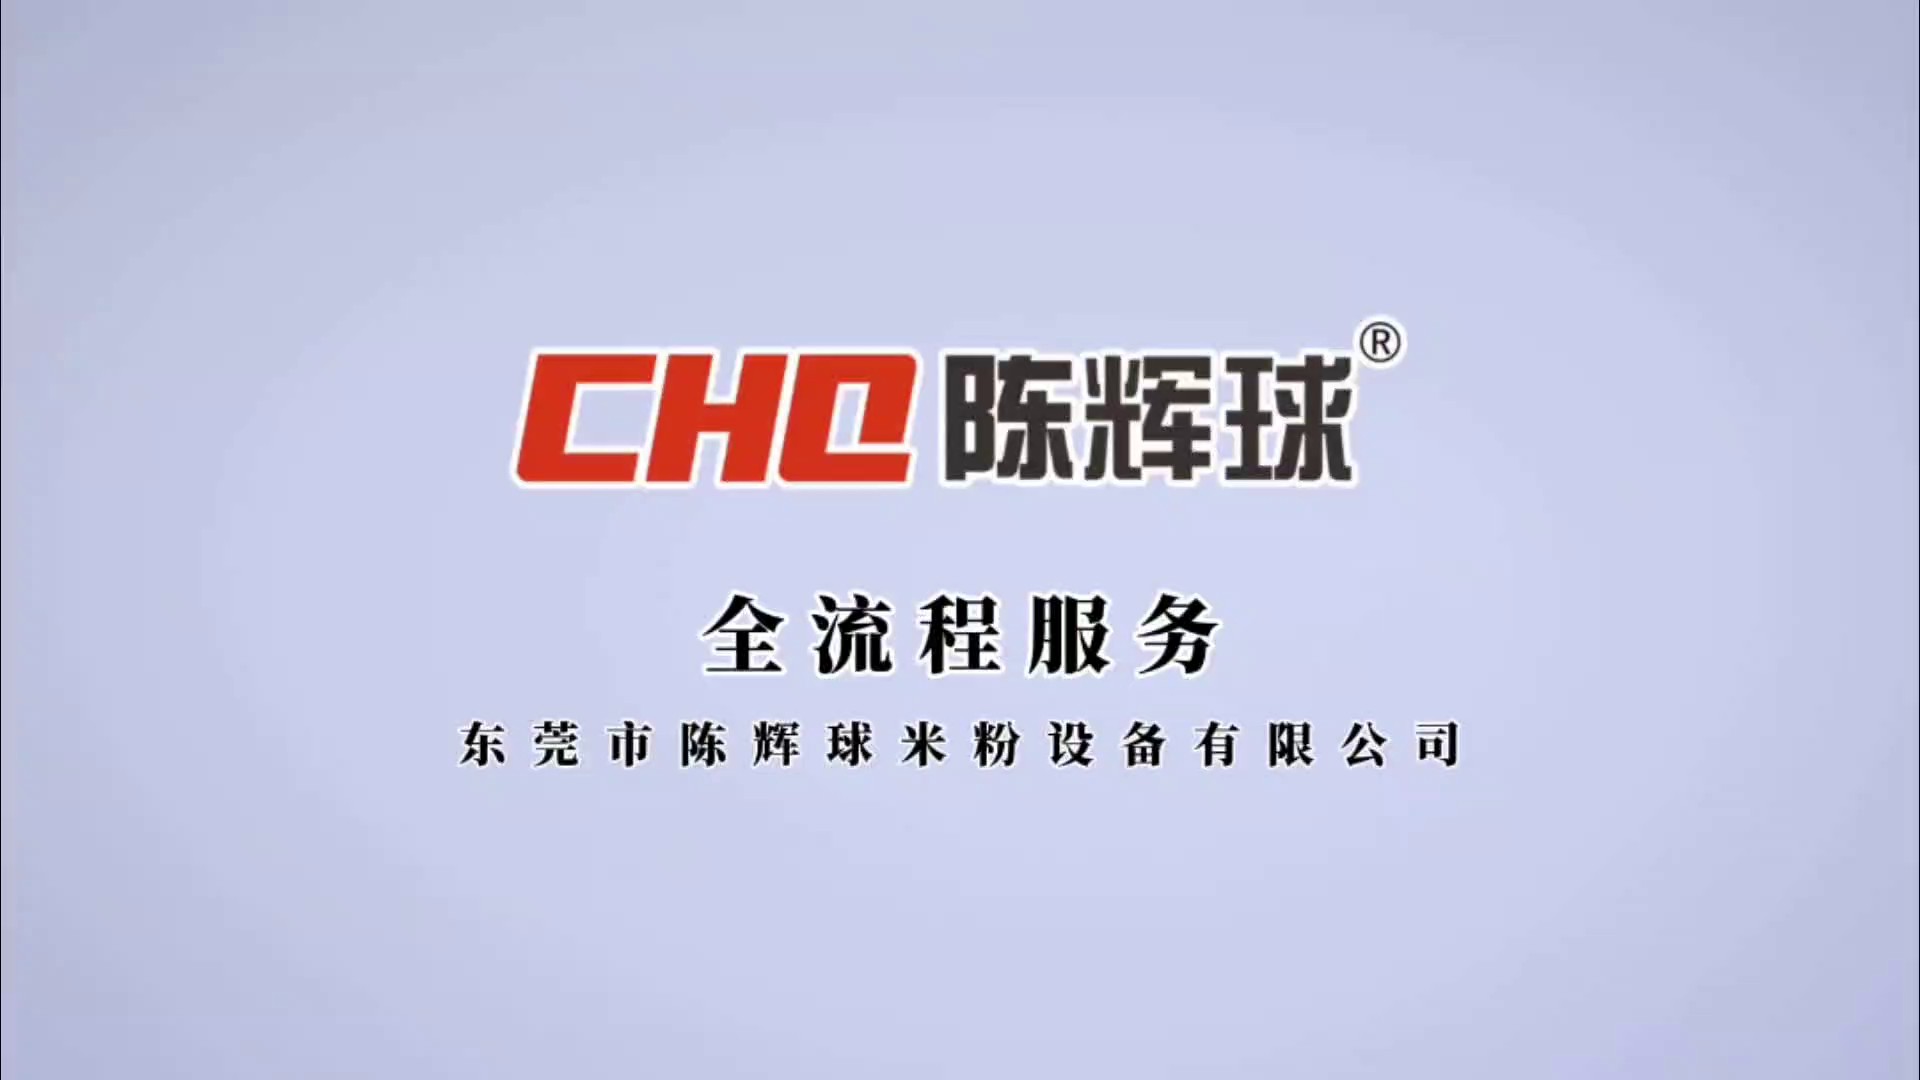 西双版纳CHQ600自熟米粉生产线咨询报价,CHQ600自熟米粉生产线